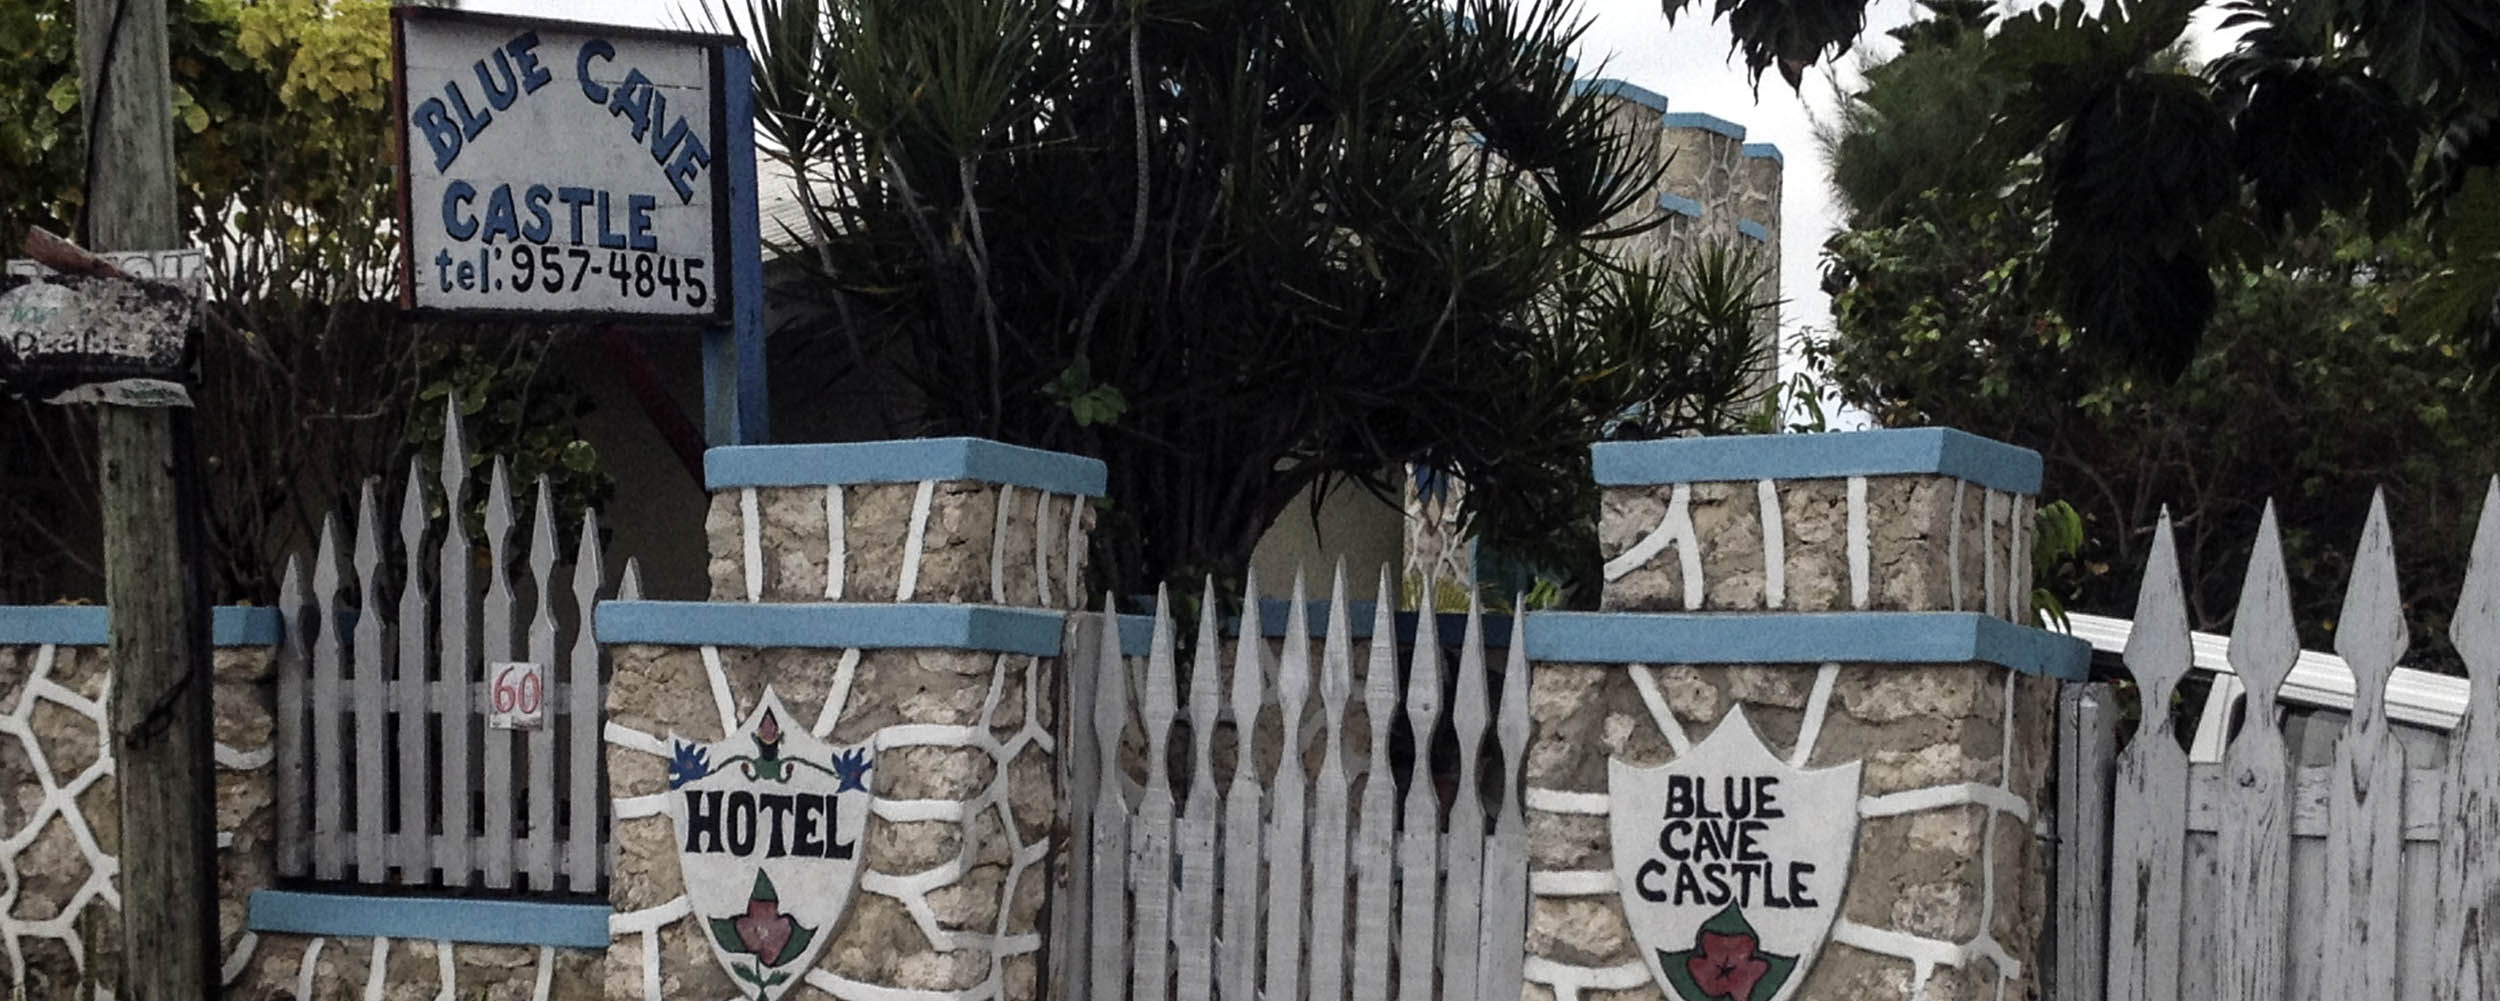 Blue Cave Castle - Negril Jamaica